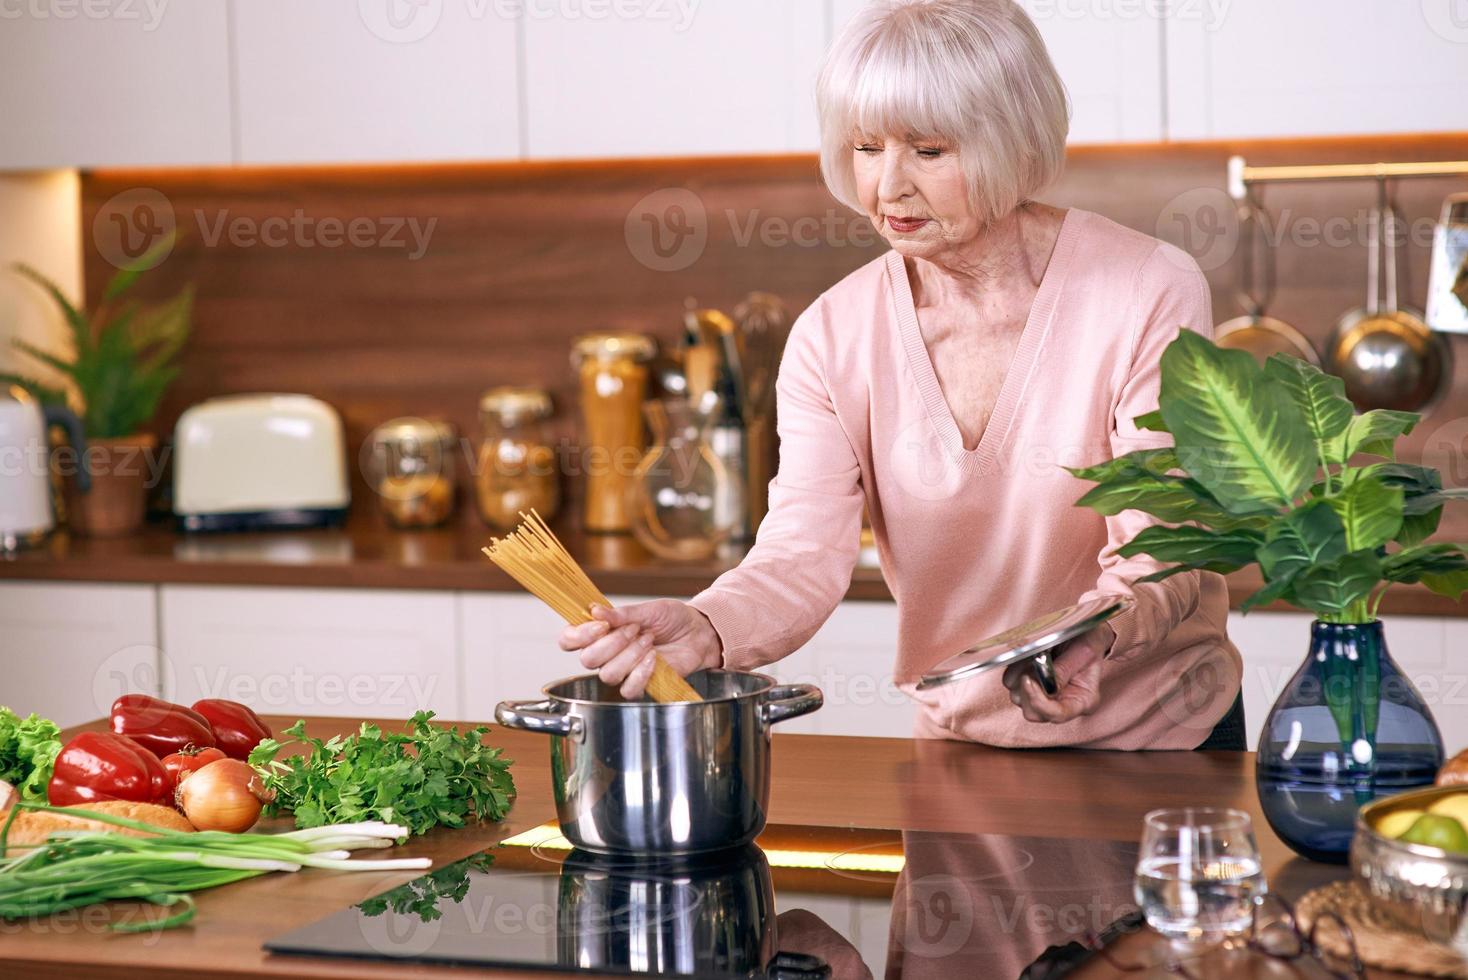 femme joyeuse senior cuisine dans une cuisine moderne. nourriture, compétences, concept de mode de vie photo